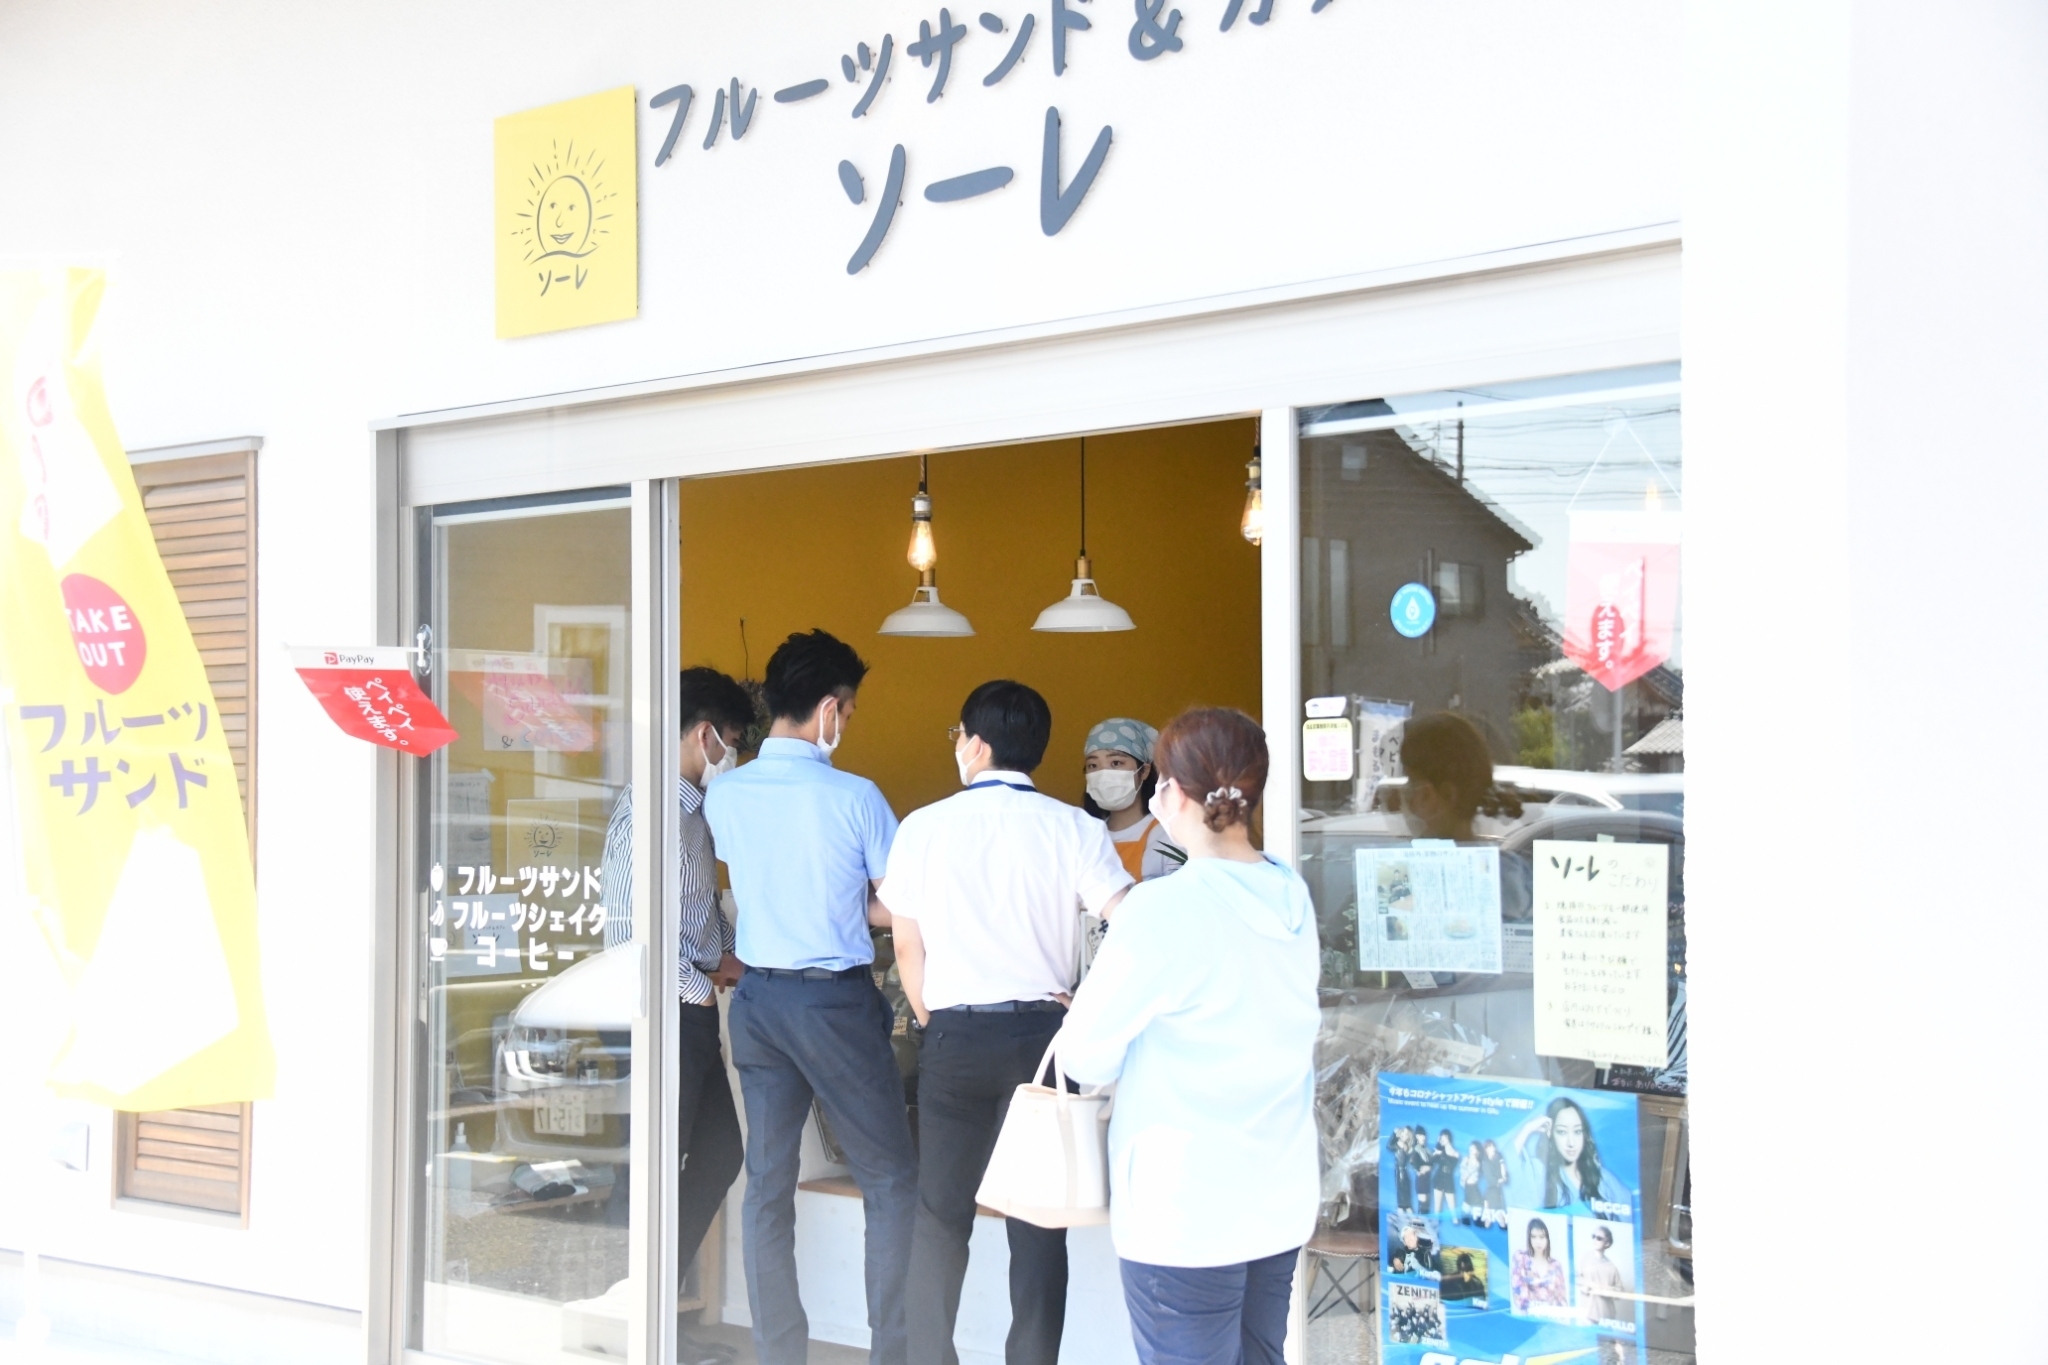 食べるだけでSDGs活動に！
愛知県春日井市のフルーツサンド店が、
季節のフルーツを使ったサスティナブルサンドを11月に発売！